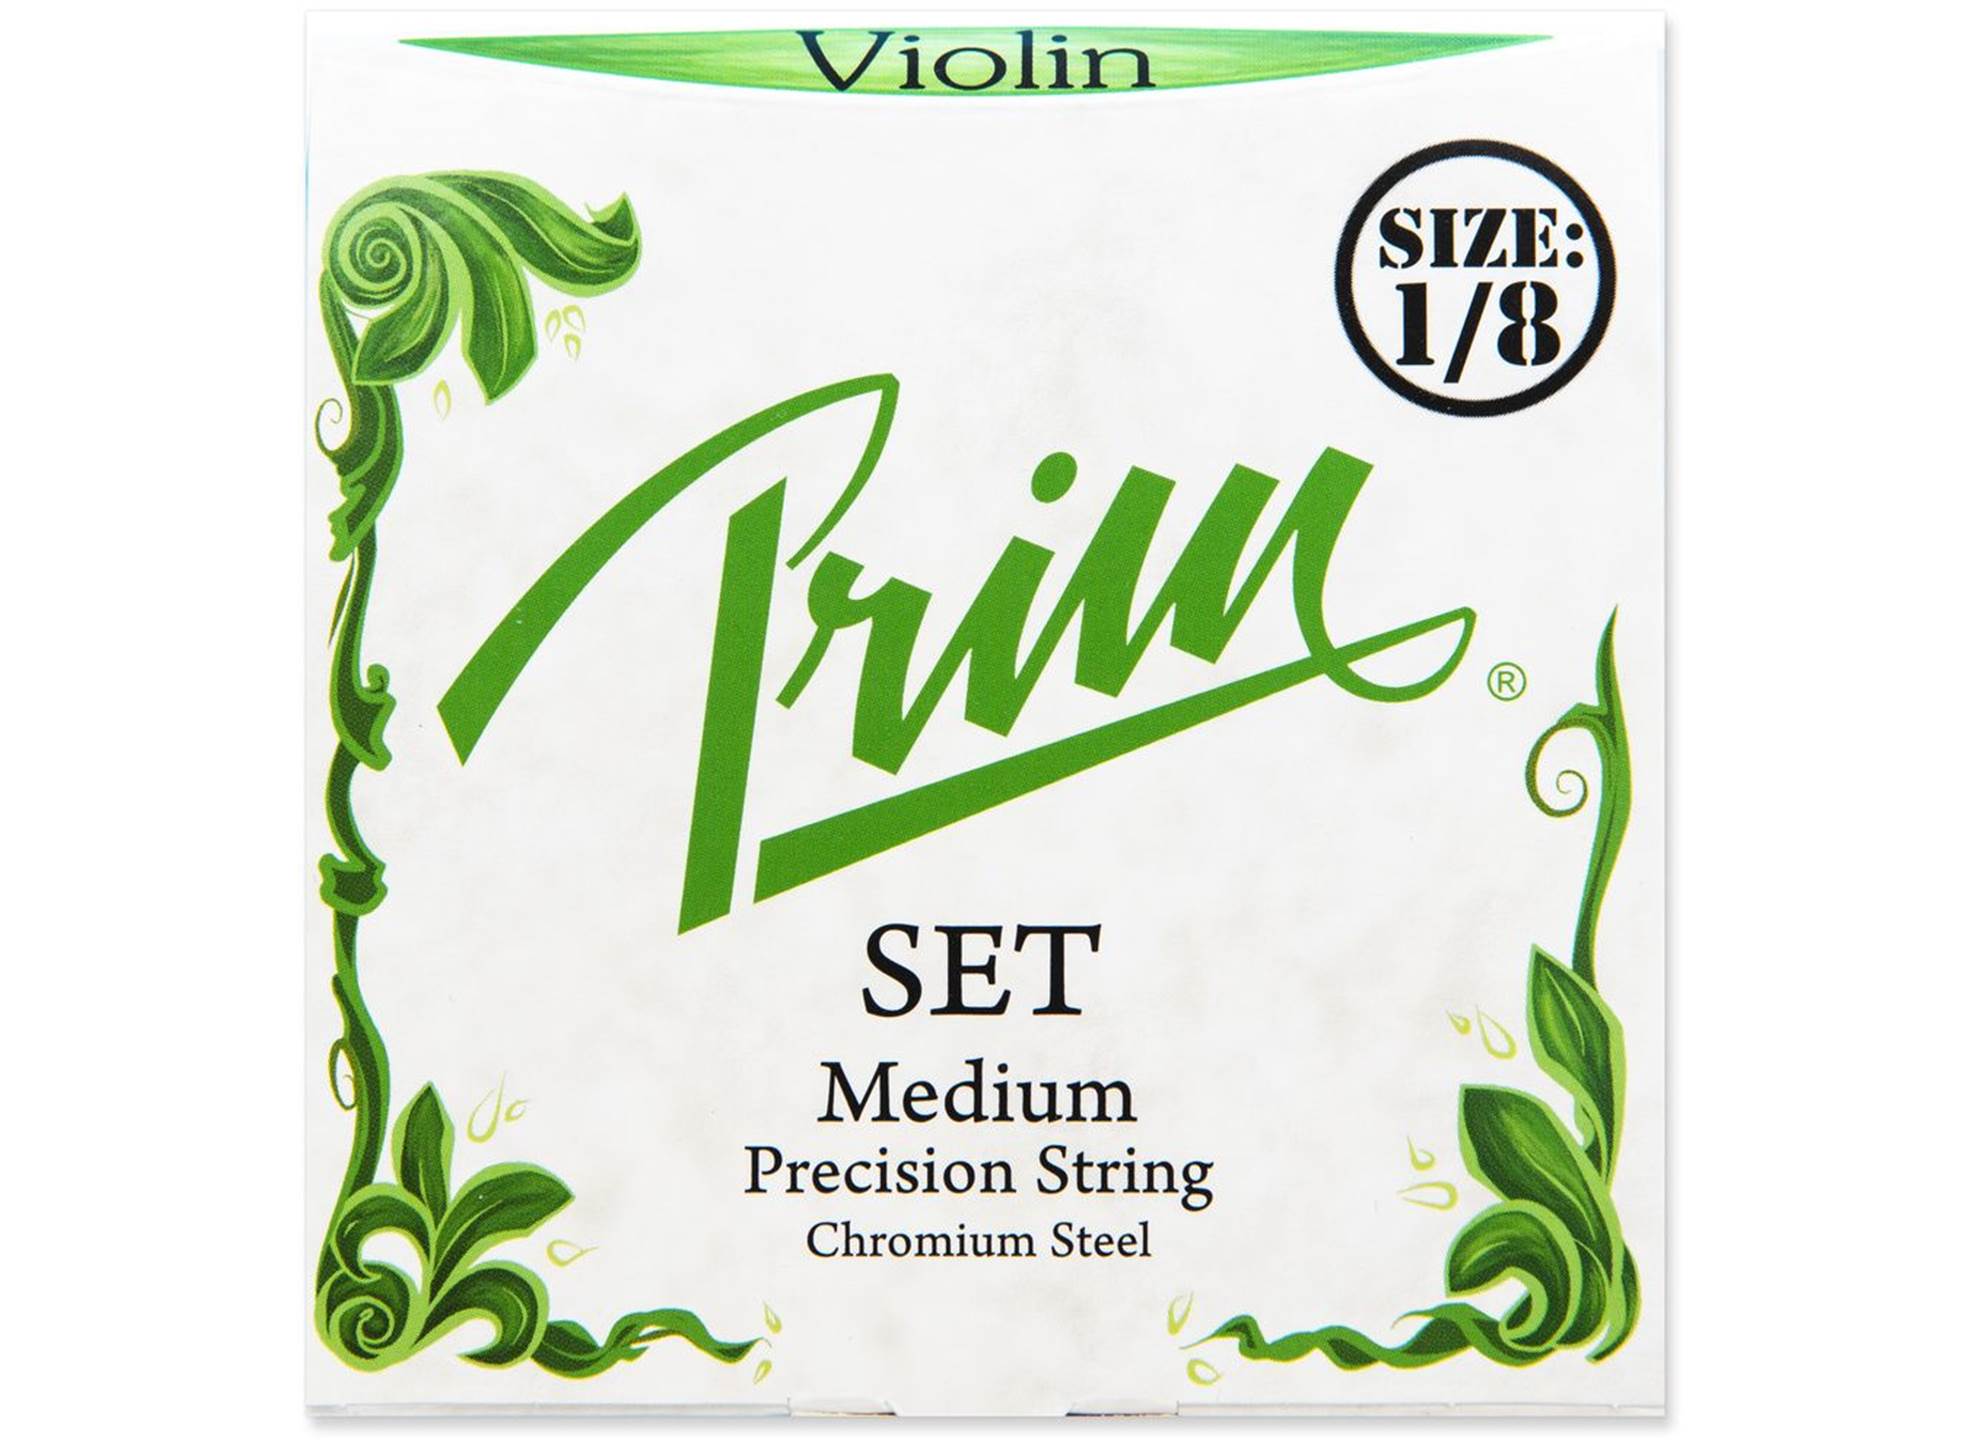 Violin 1/8 Set Medium